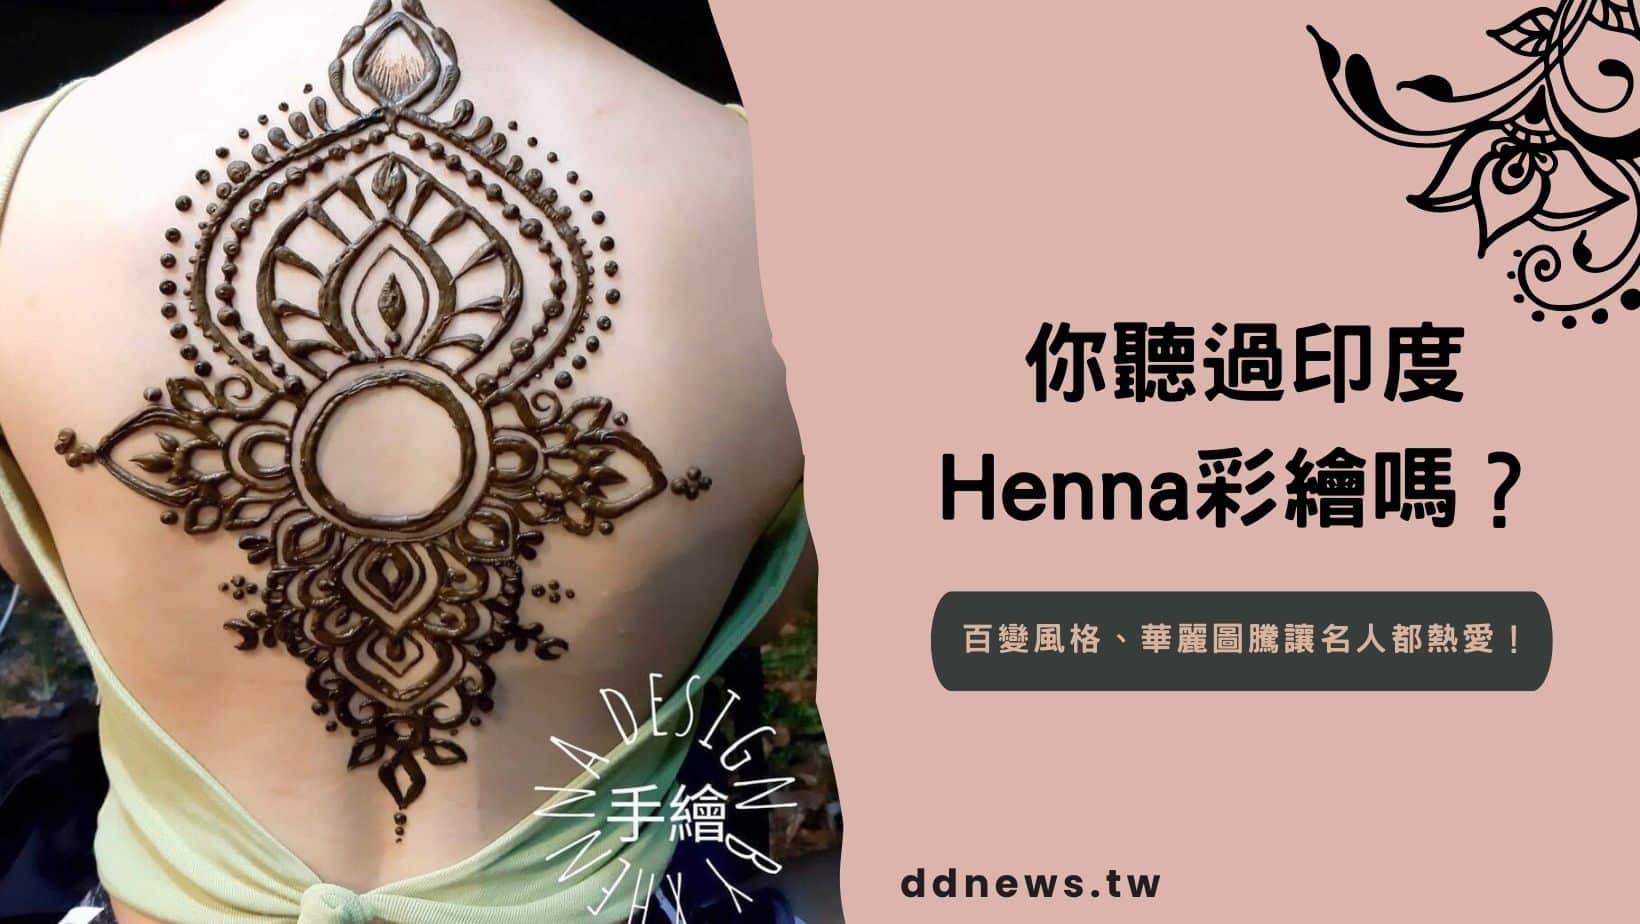 你聽過印度Henna彩繪嗎？百變風格、華麗圖騰讓蔡依林等名人都熱愛！